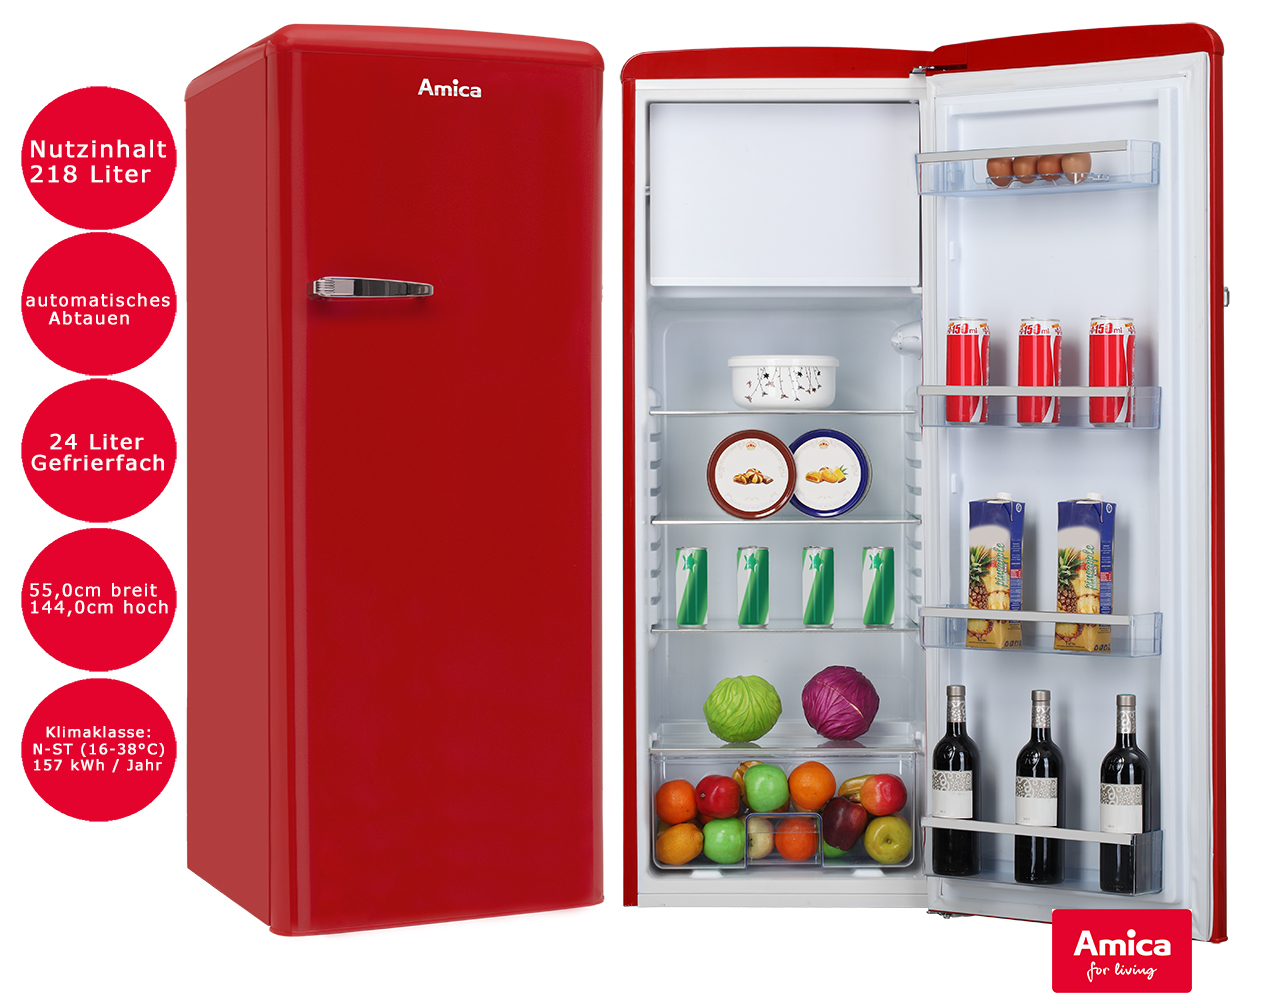 Amica Kühlschrank Rot 218L mit Gefrierfach 144cm hoch freistehend